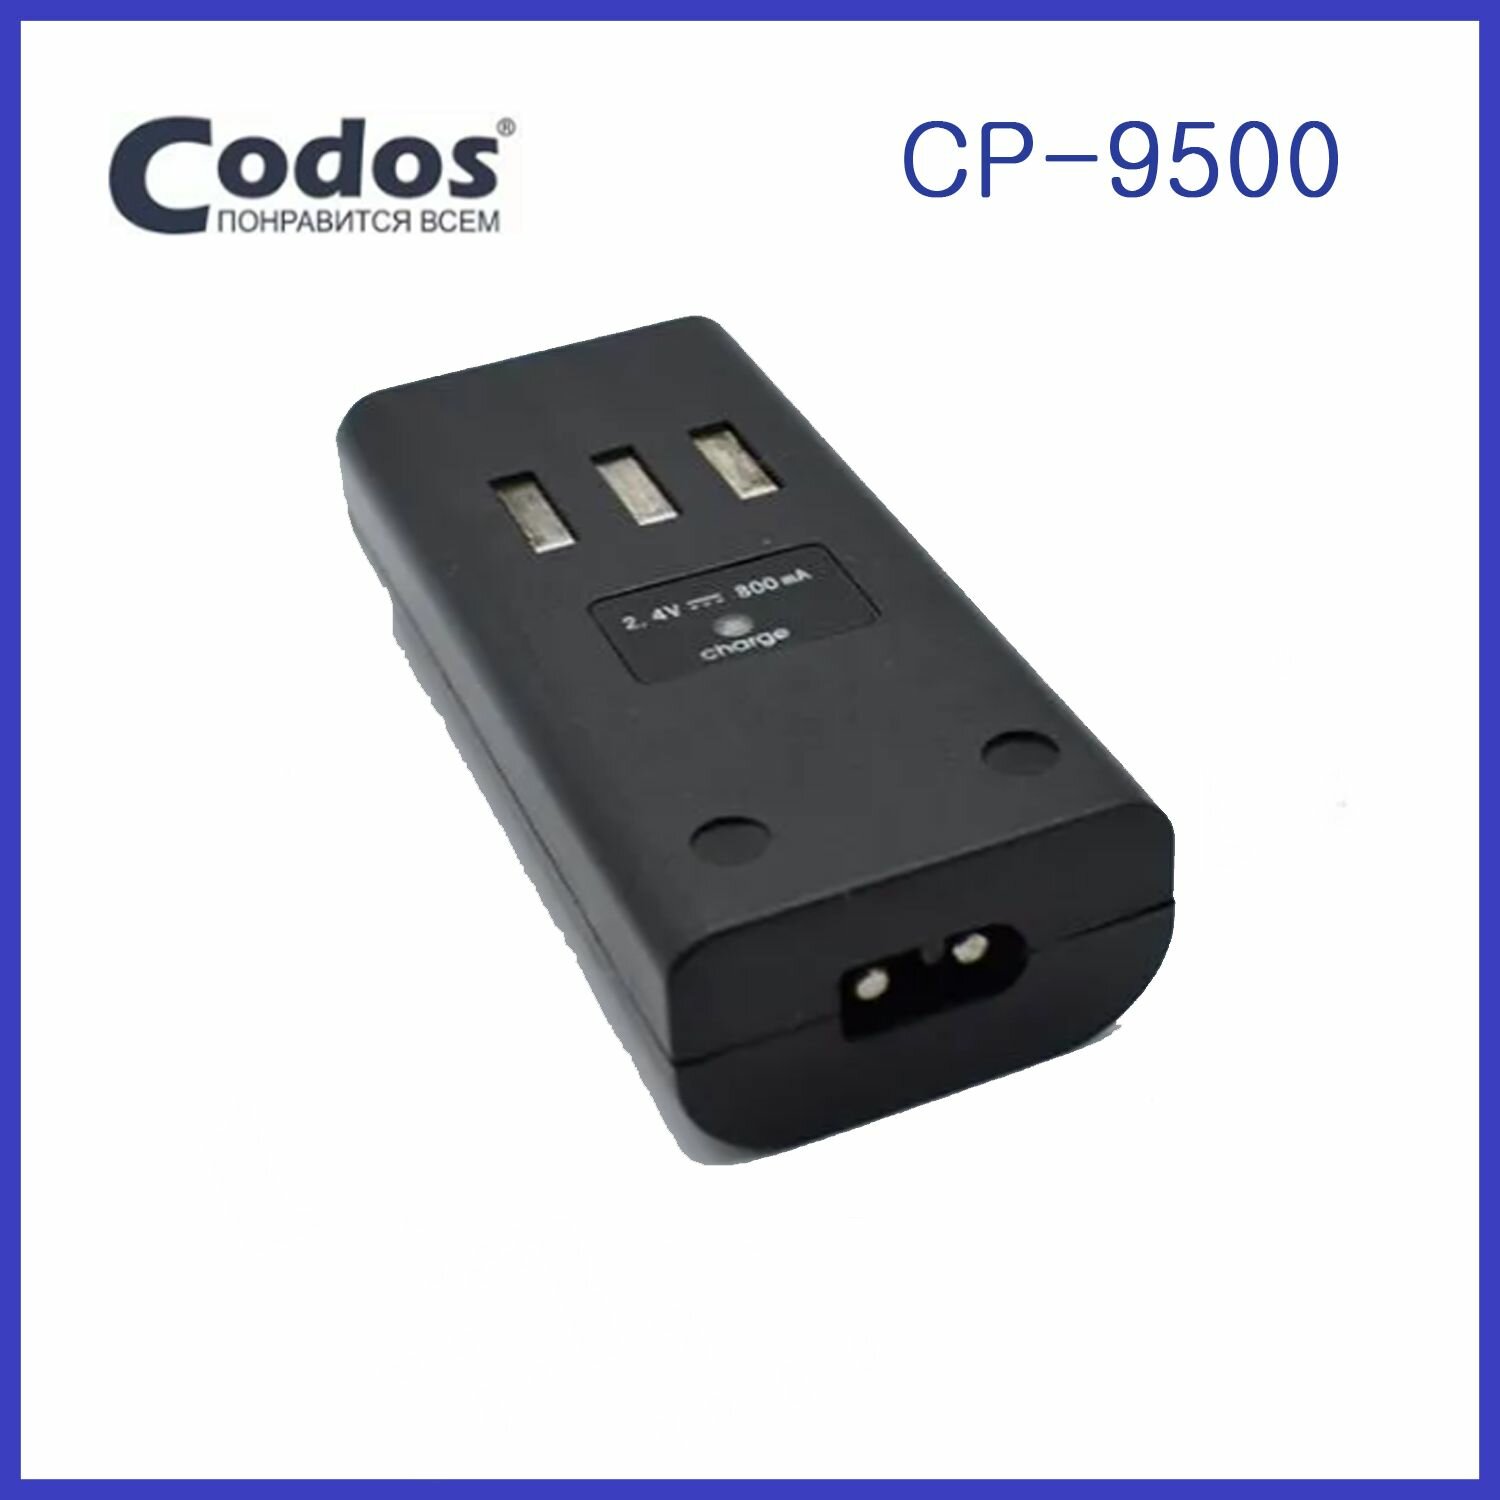 Аккумулятор Codos CP-9500 Сменный 2.4V 800мА